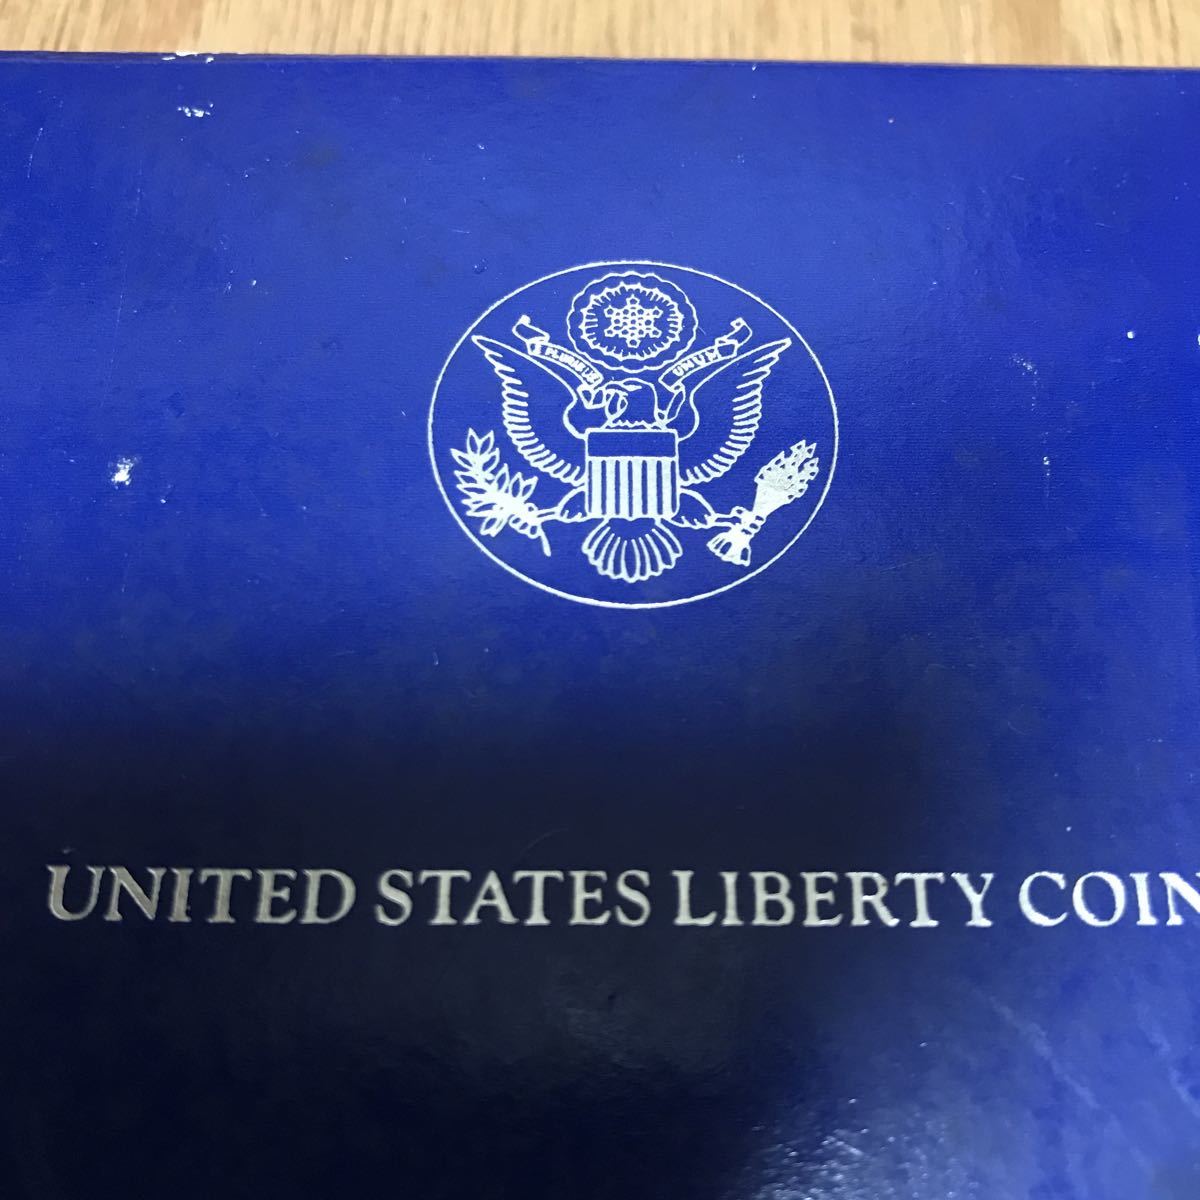 プルーフ 1986年アメリカ 自由の女神 LIBERTY UNITED STATES 記念コイン 化粧箱完備 エリスアイランド ONE DLLAR 1ドル 銀貨_画像9